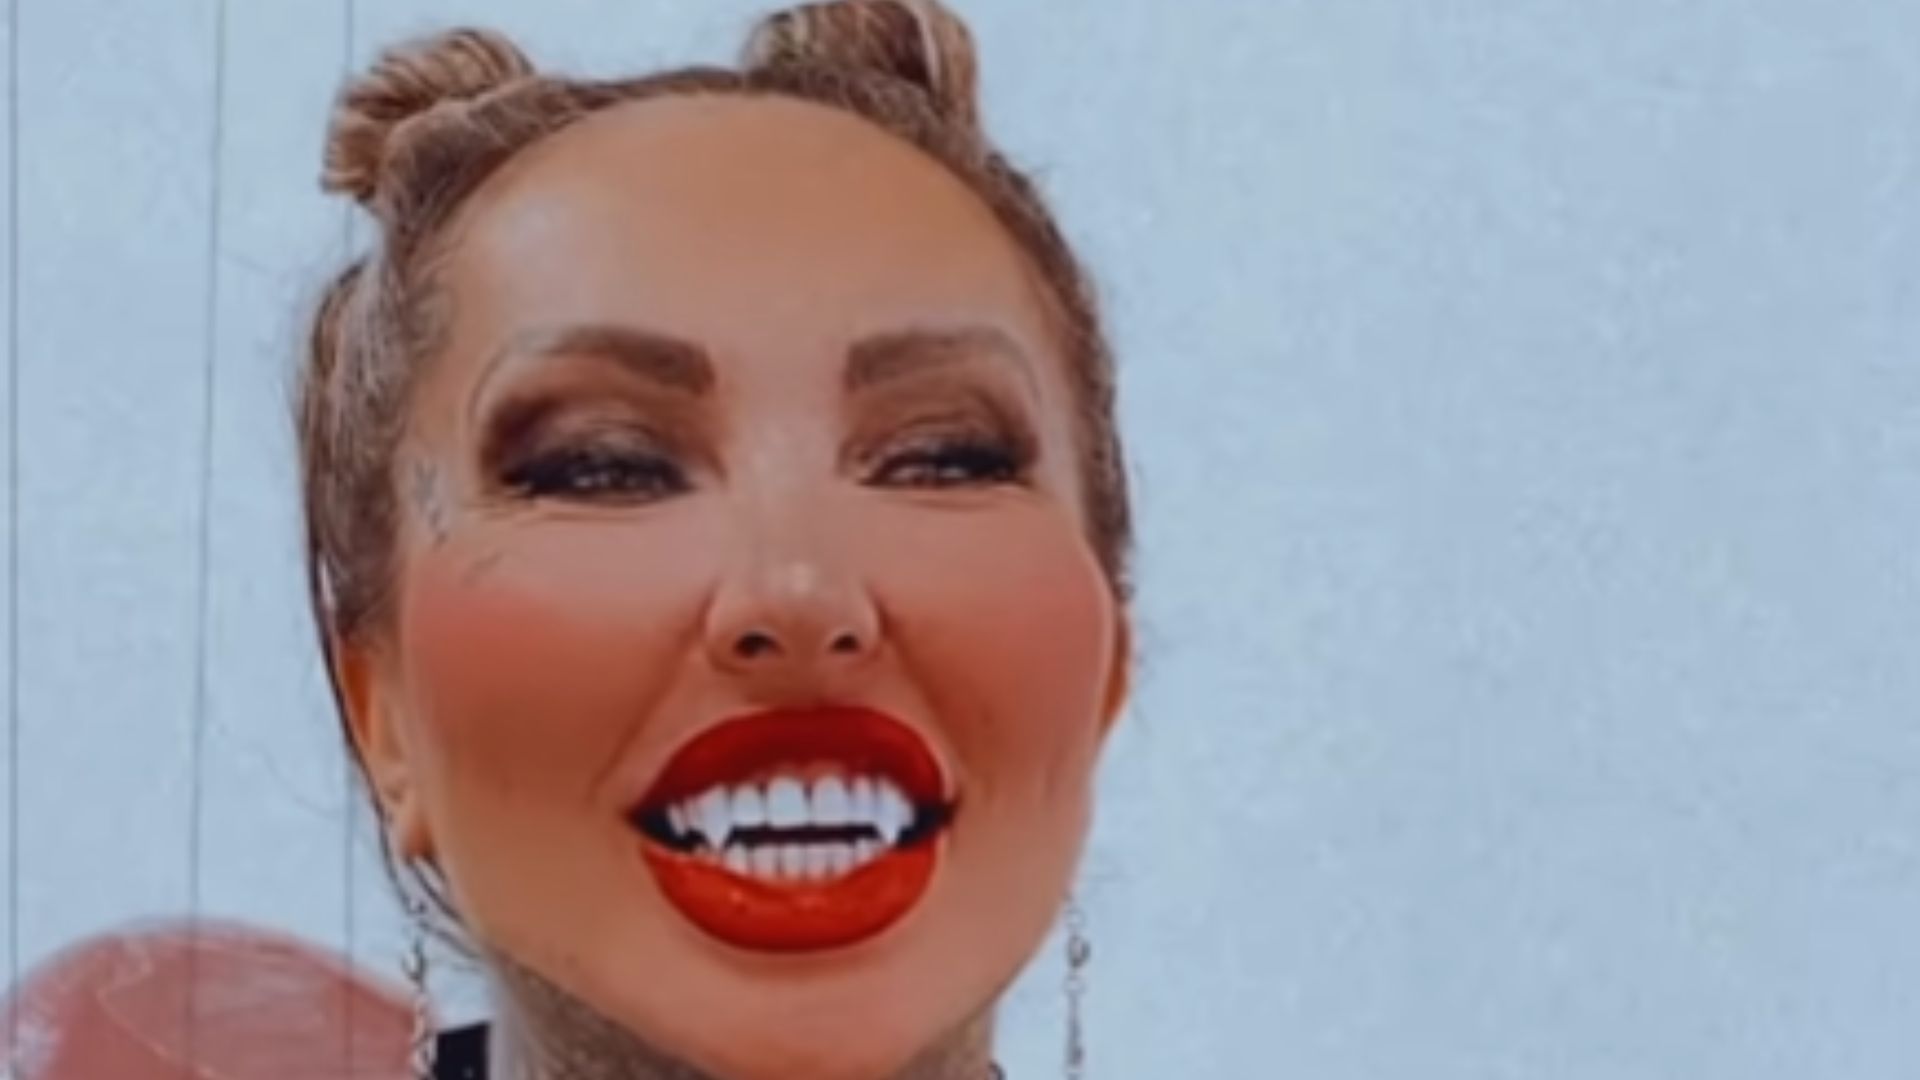 Modelo Sabrina Boing Boing escandaliza a web após trocar dentes por ‘presas’